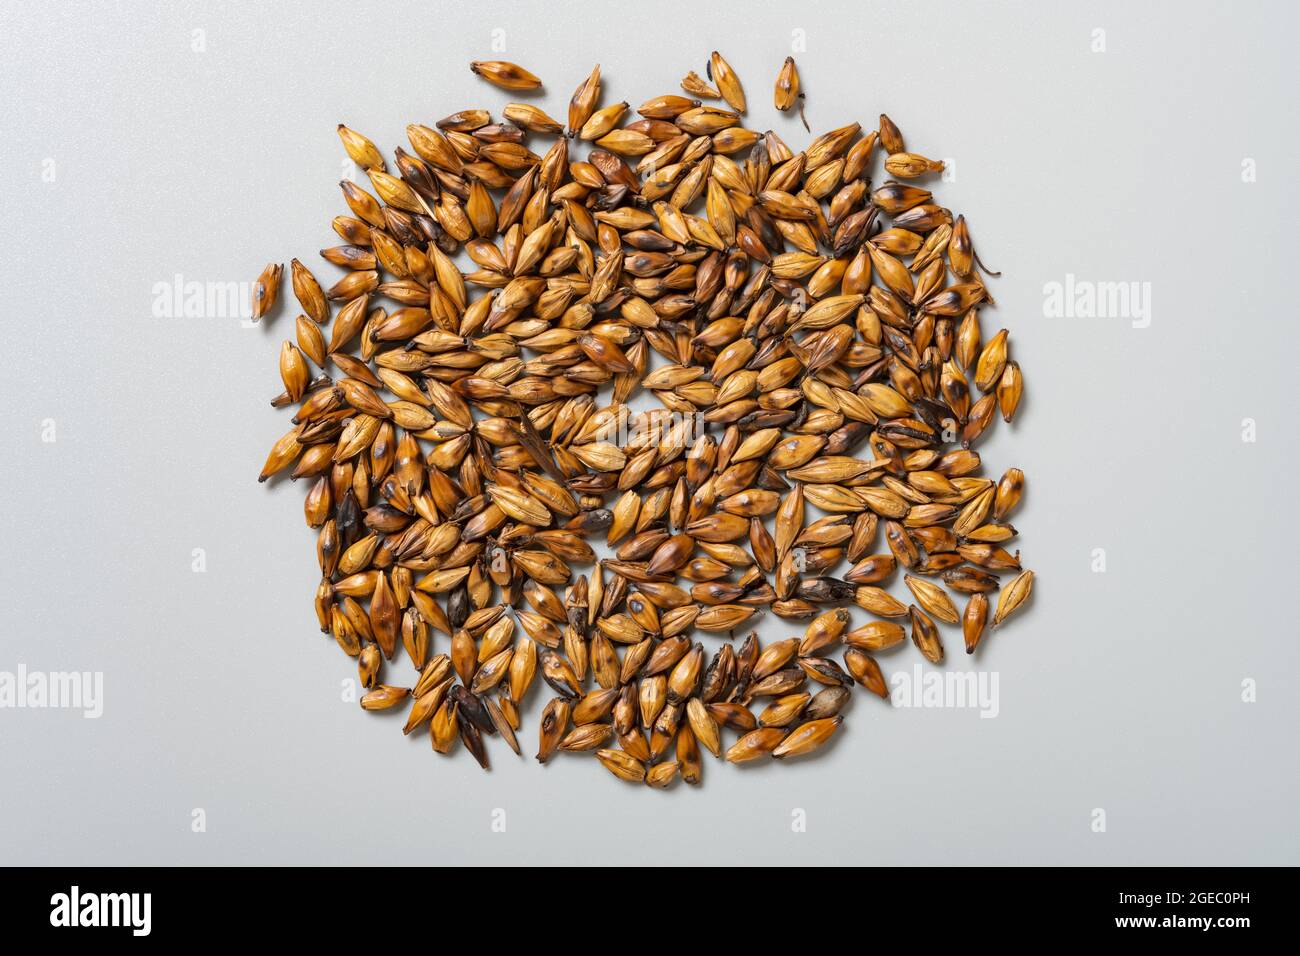 top view herb JiaoMaiYa or Hordei Fructus Germinatus Praeparatus or Stir-Heating to brown Barley Sprout Stock Photo